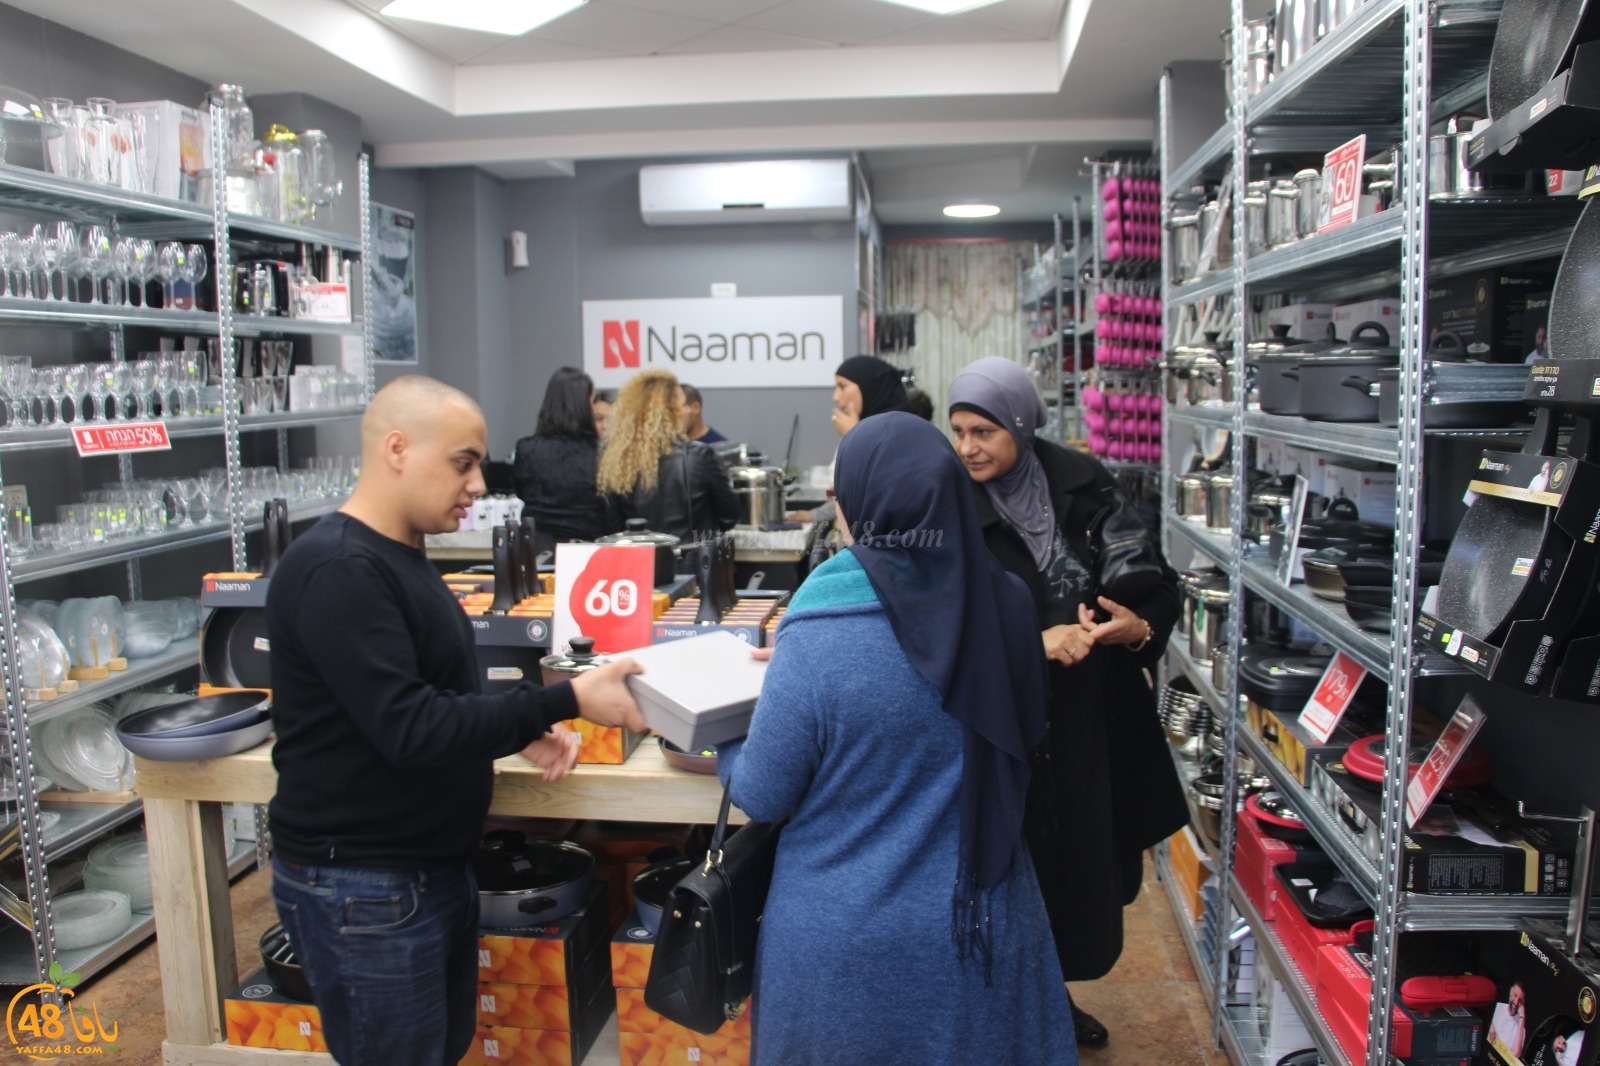 بالصور: افتتاح فرع جديد لمحلات نعمان للأدوات المنزلية بيافا وحملة تخفيضات